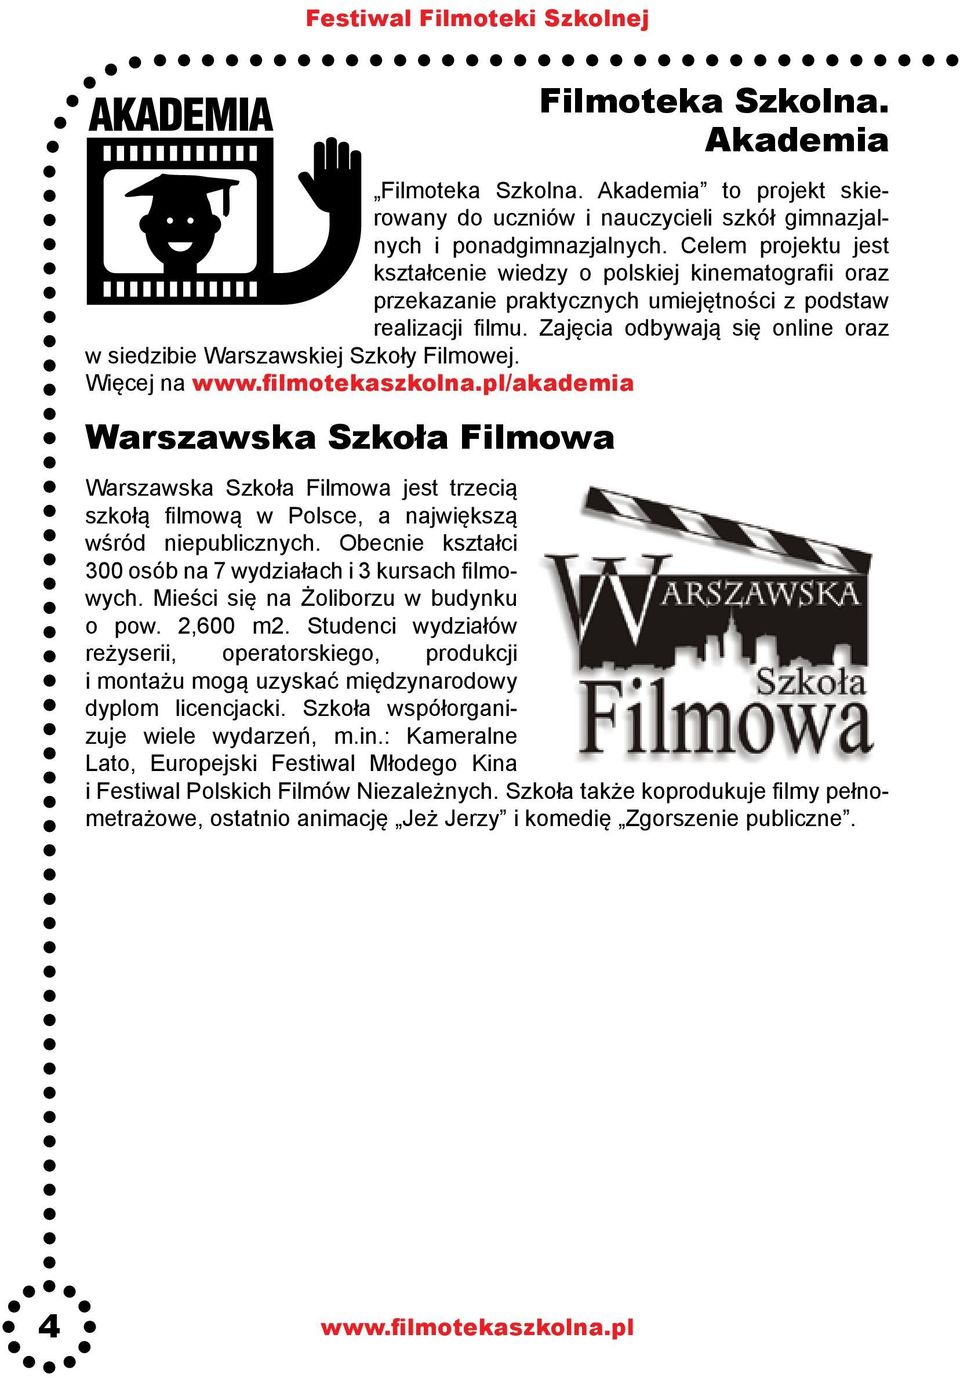 Zajęcia odbywają się online oraz w siedzibie Warszawskiej Szkoły Filmowej.